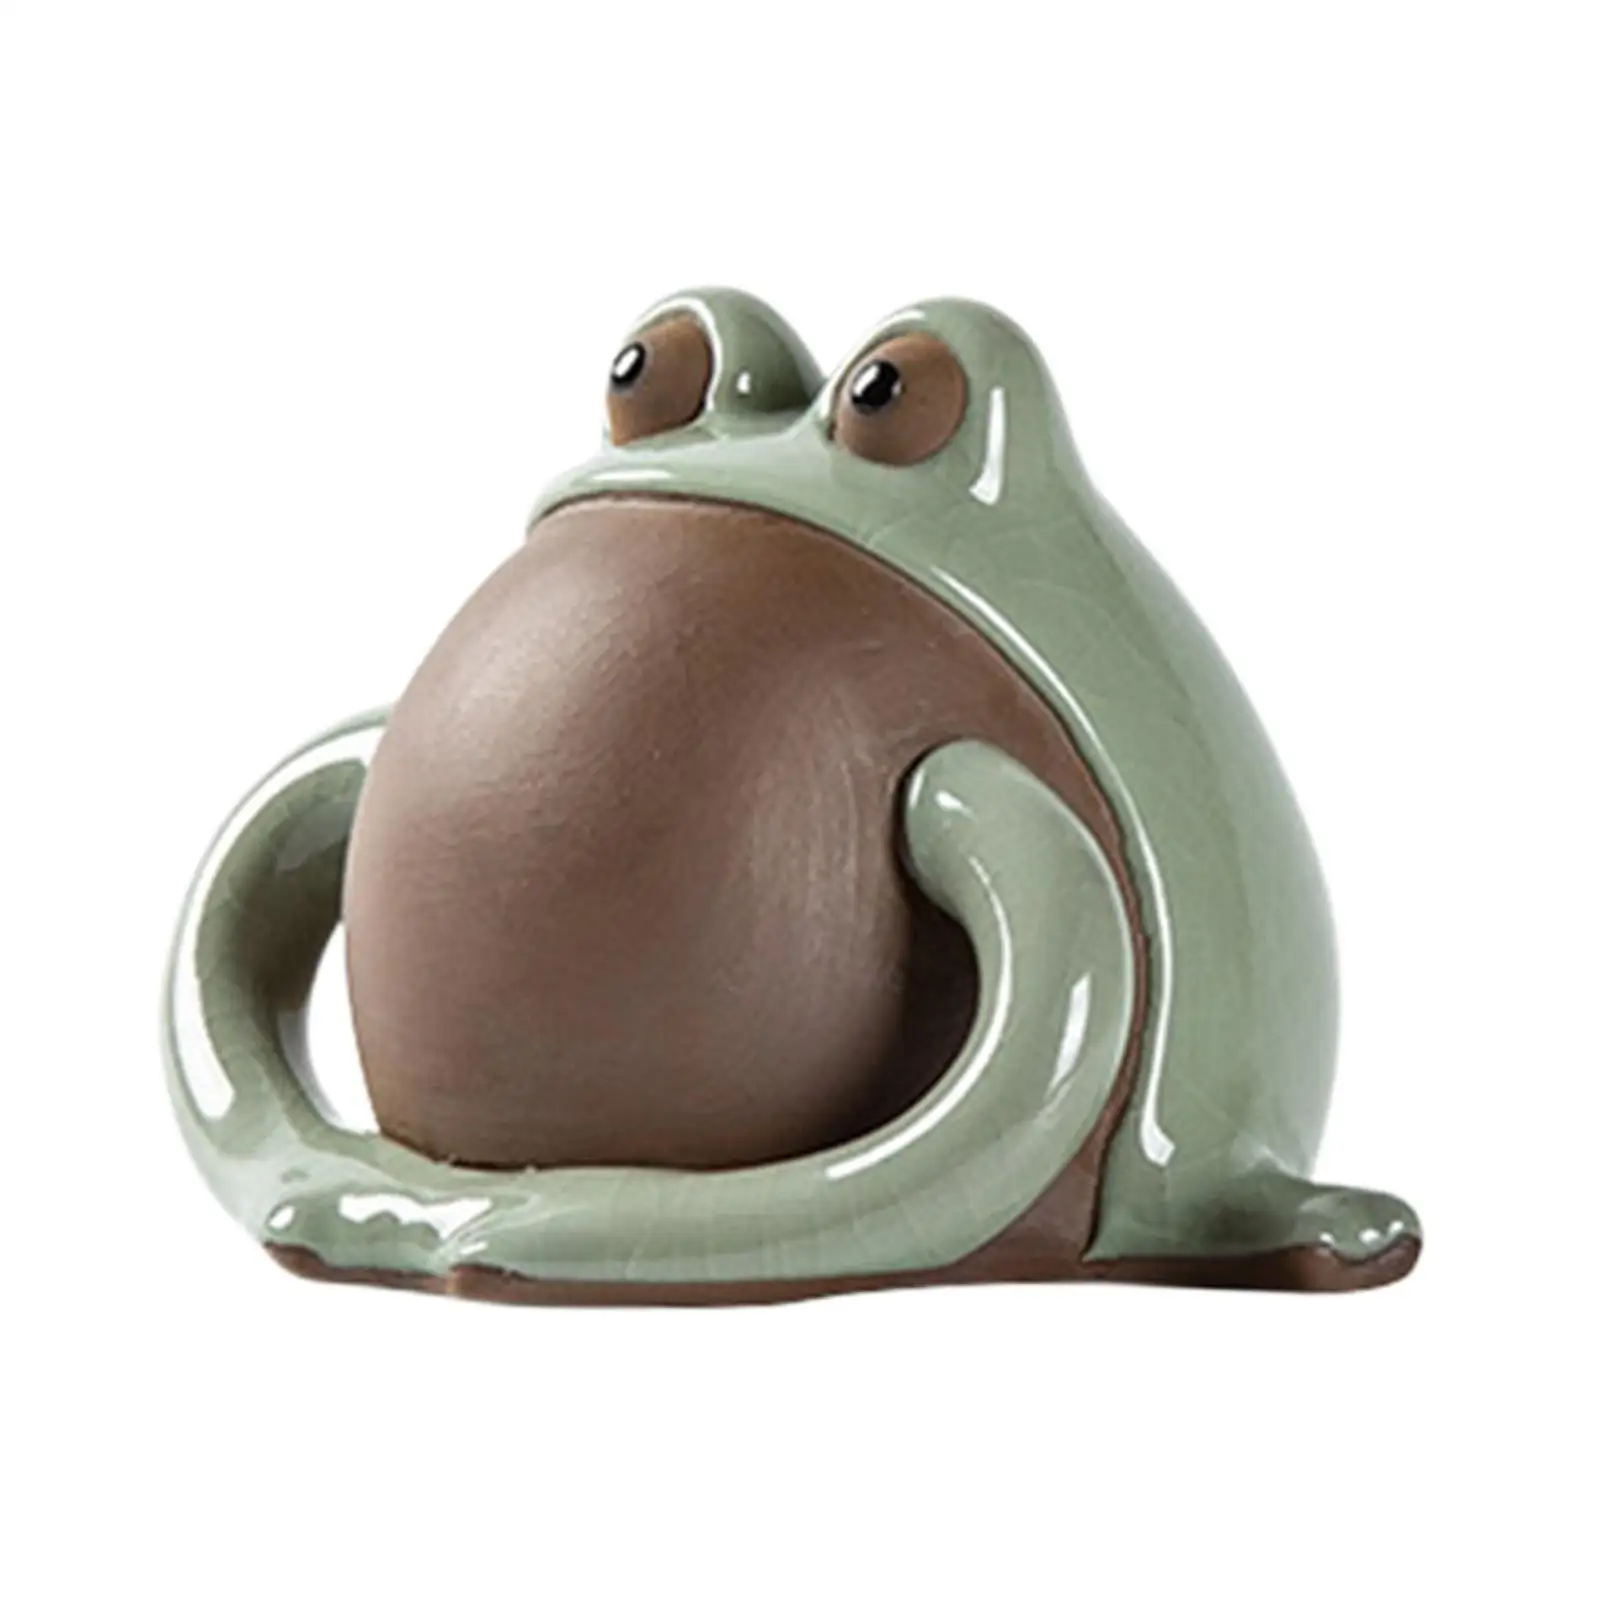 Frog Statue Ornament Tea Tray Accessories Tea Pet Sculpture for Bookcase Office Tea Room Living Room Bedroom